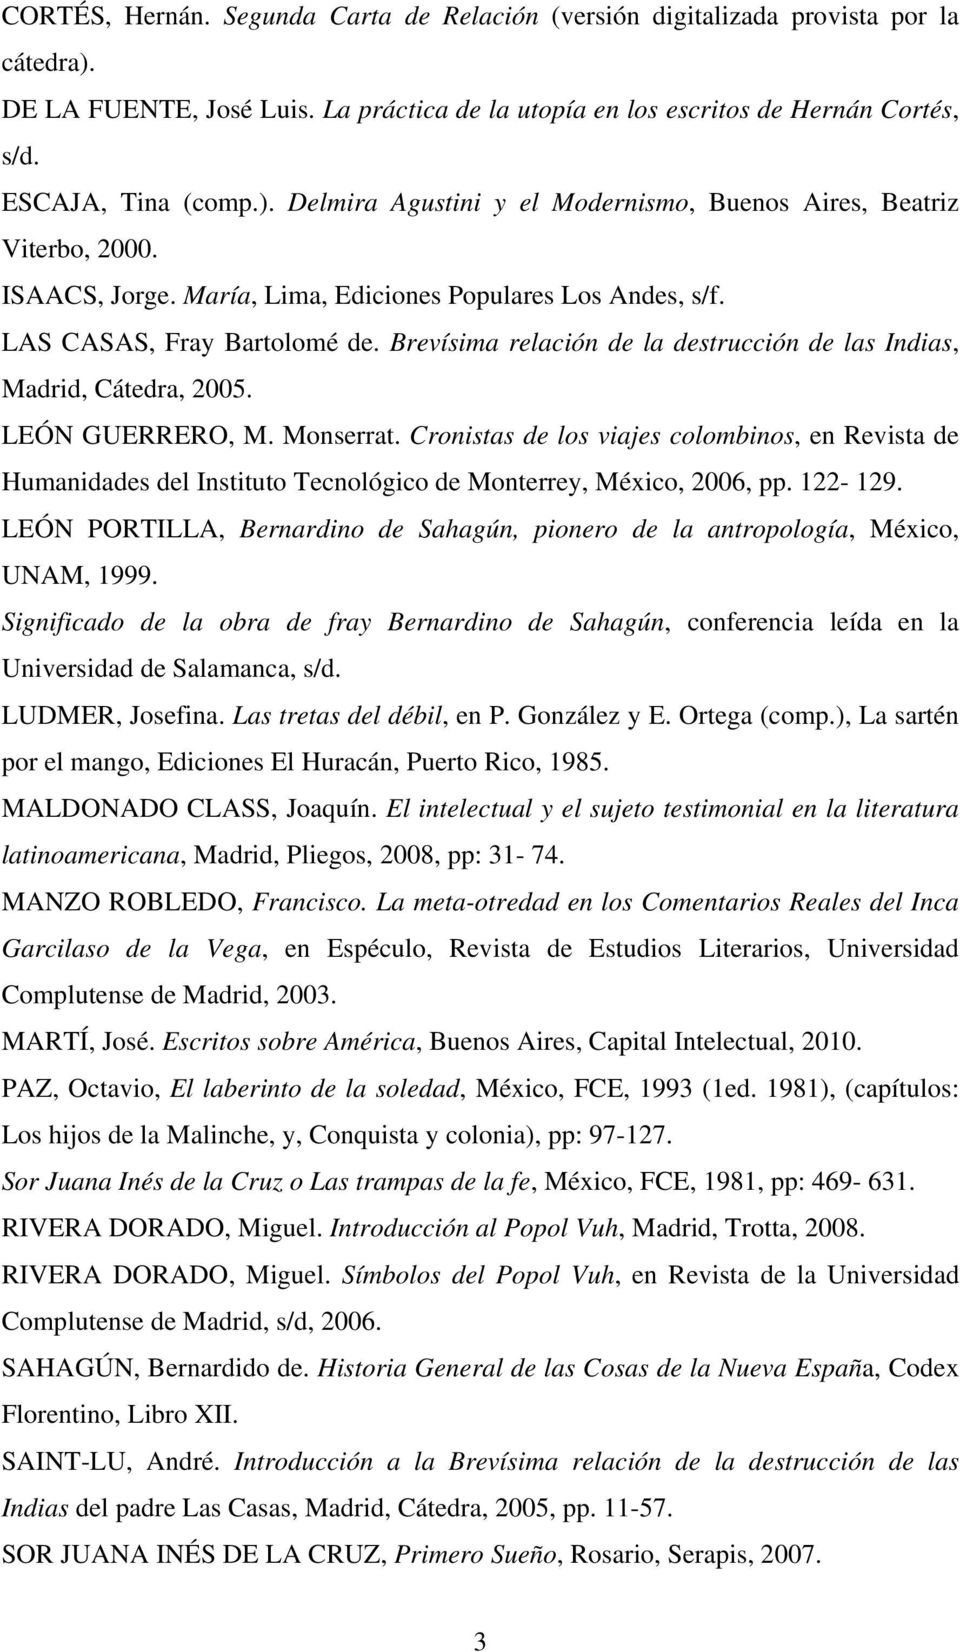 Cronistas de los viajes colombinos, en Revista de Humanidades del Instituto Tecnológico de Monterrey, México, 2006, pp. 122-129.